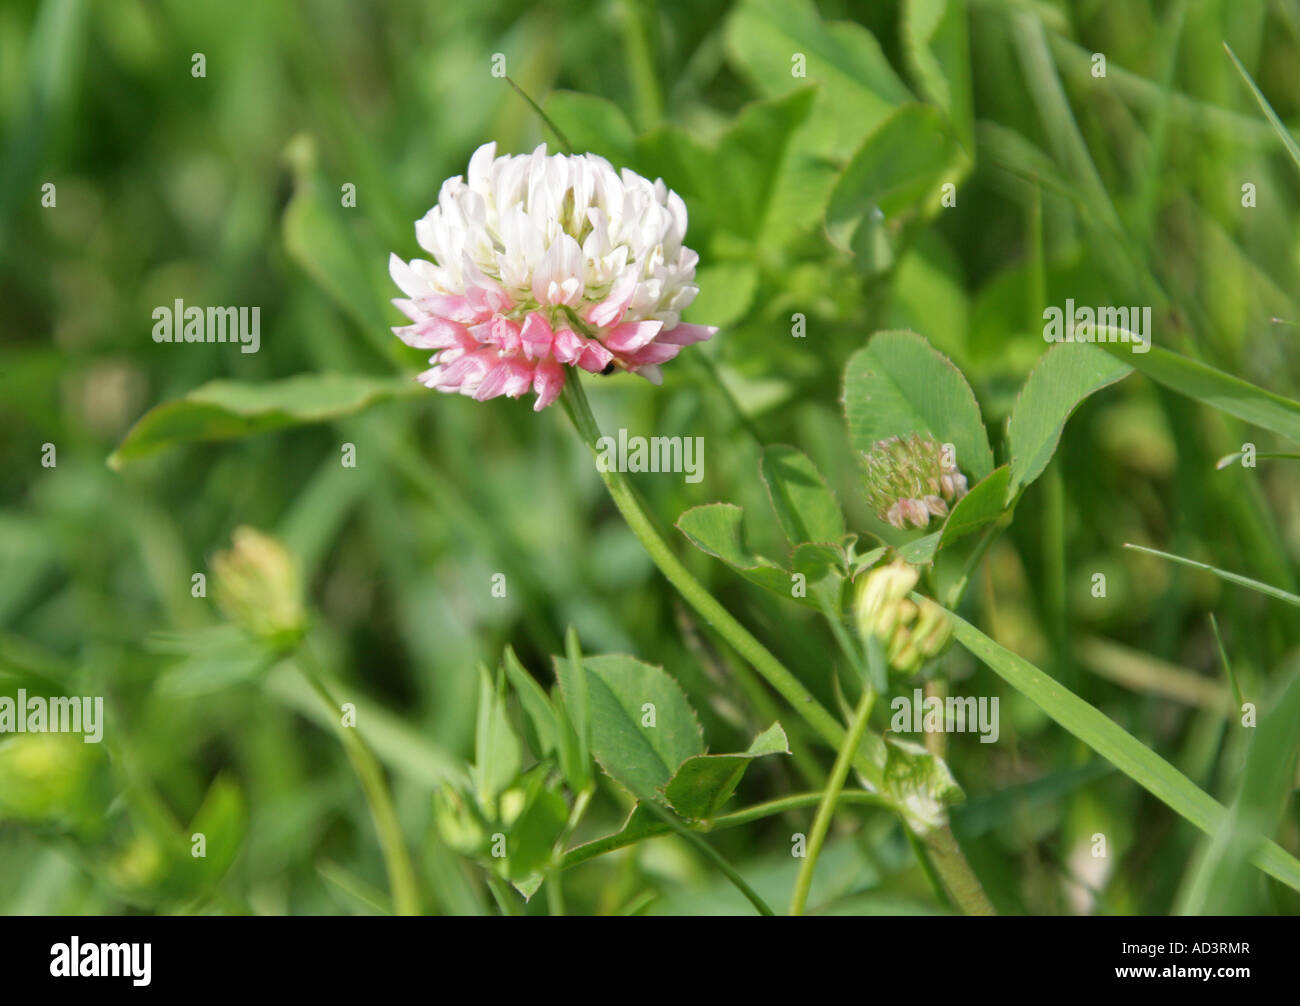 White Clover, Trifolium repens, Fabaceae (Leguminosae) Stock Photo